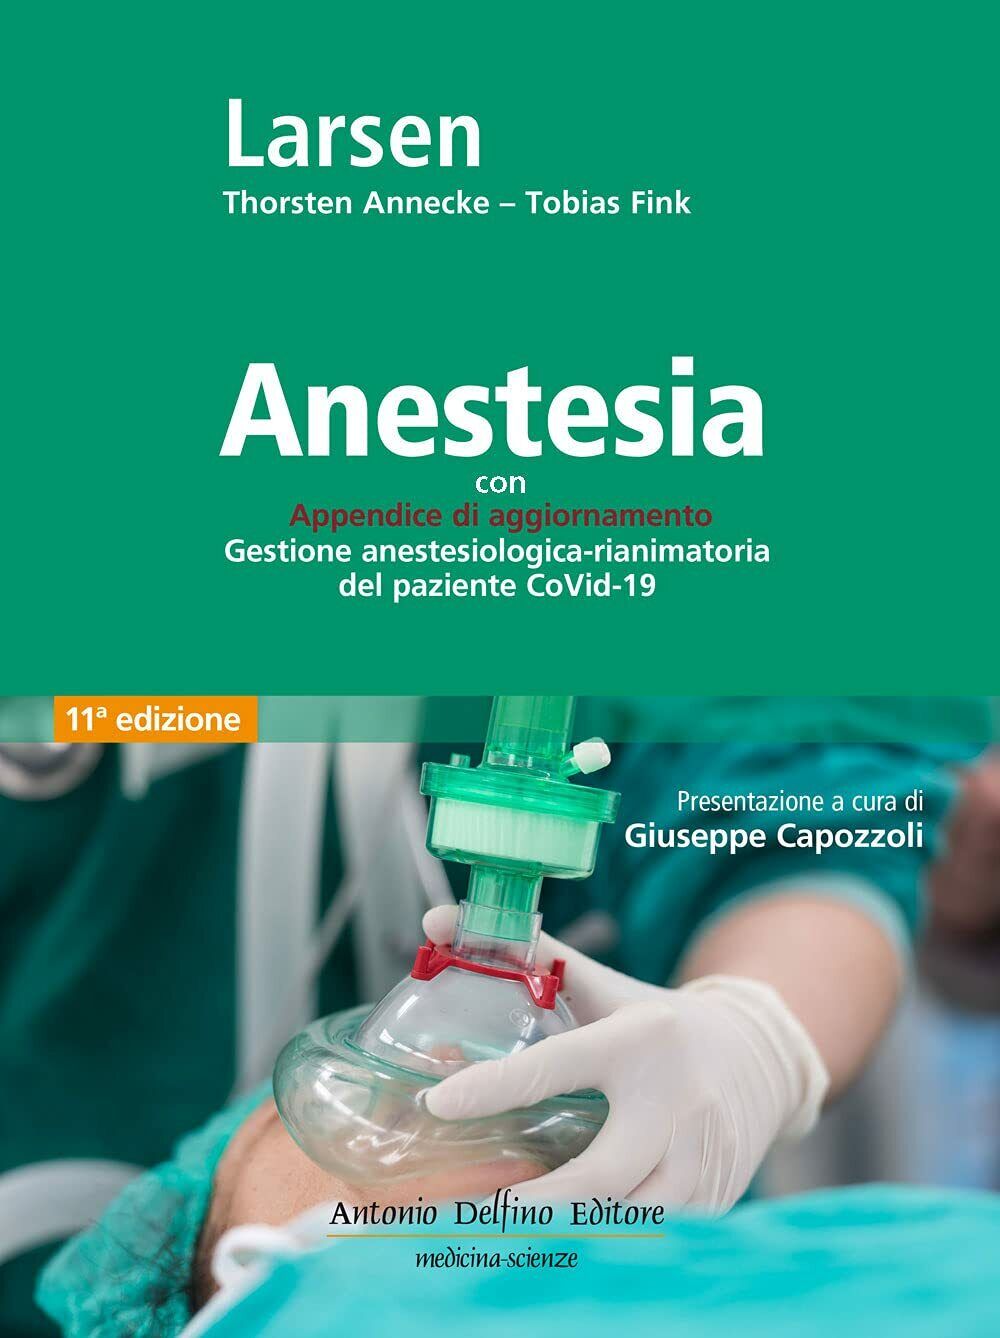 Anestesia -  Reinhard Larsen, Thorsten Annecke, Tobias Fink - Delfino - 2021